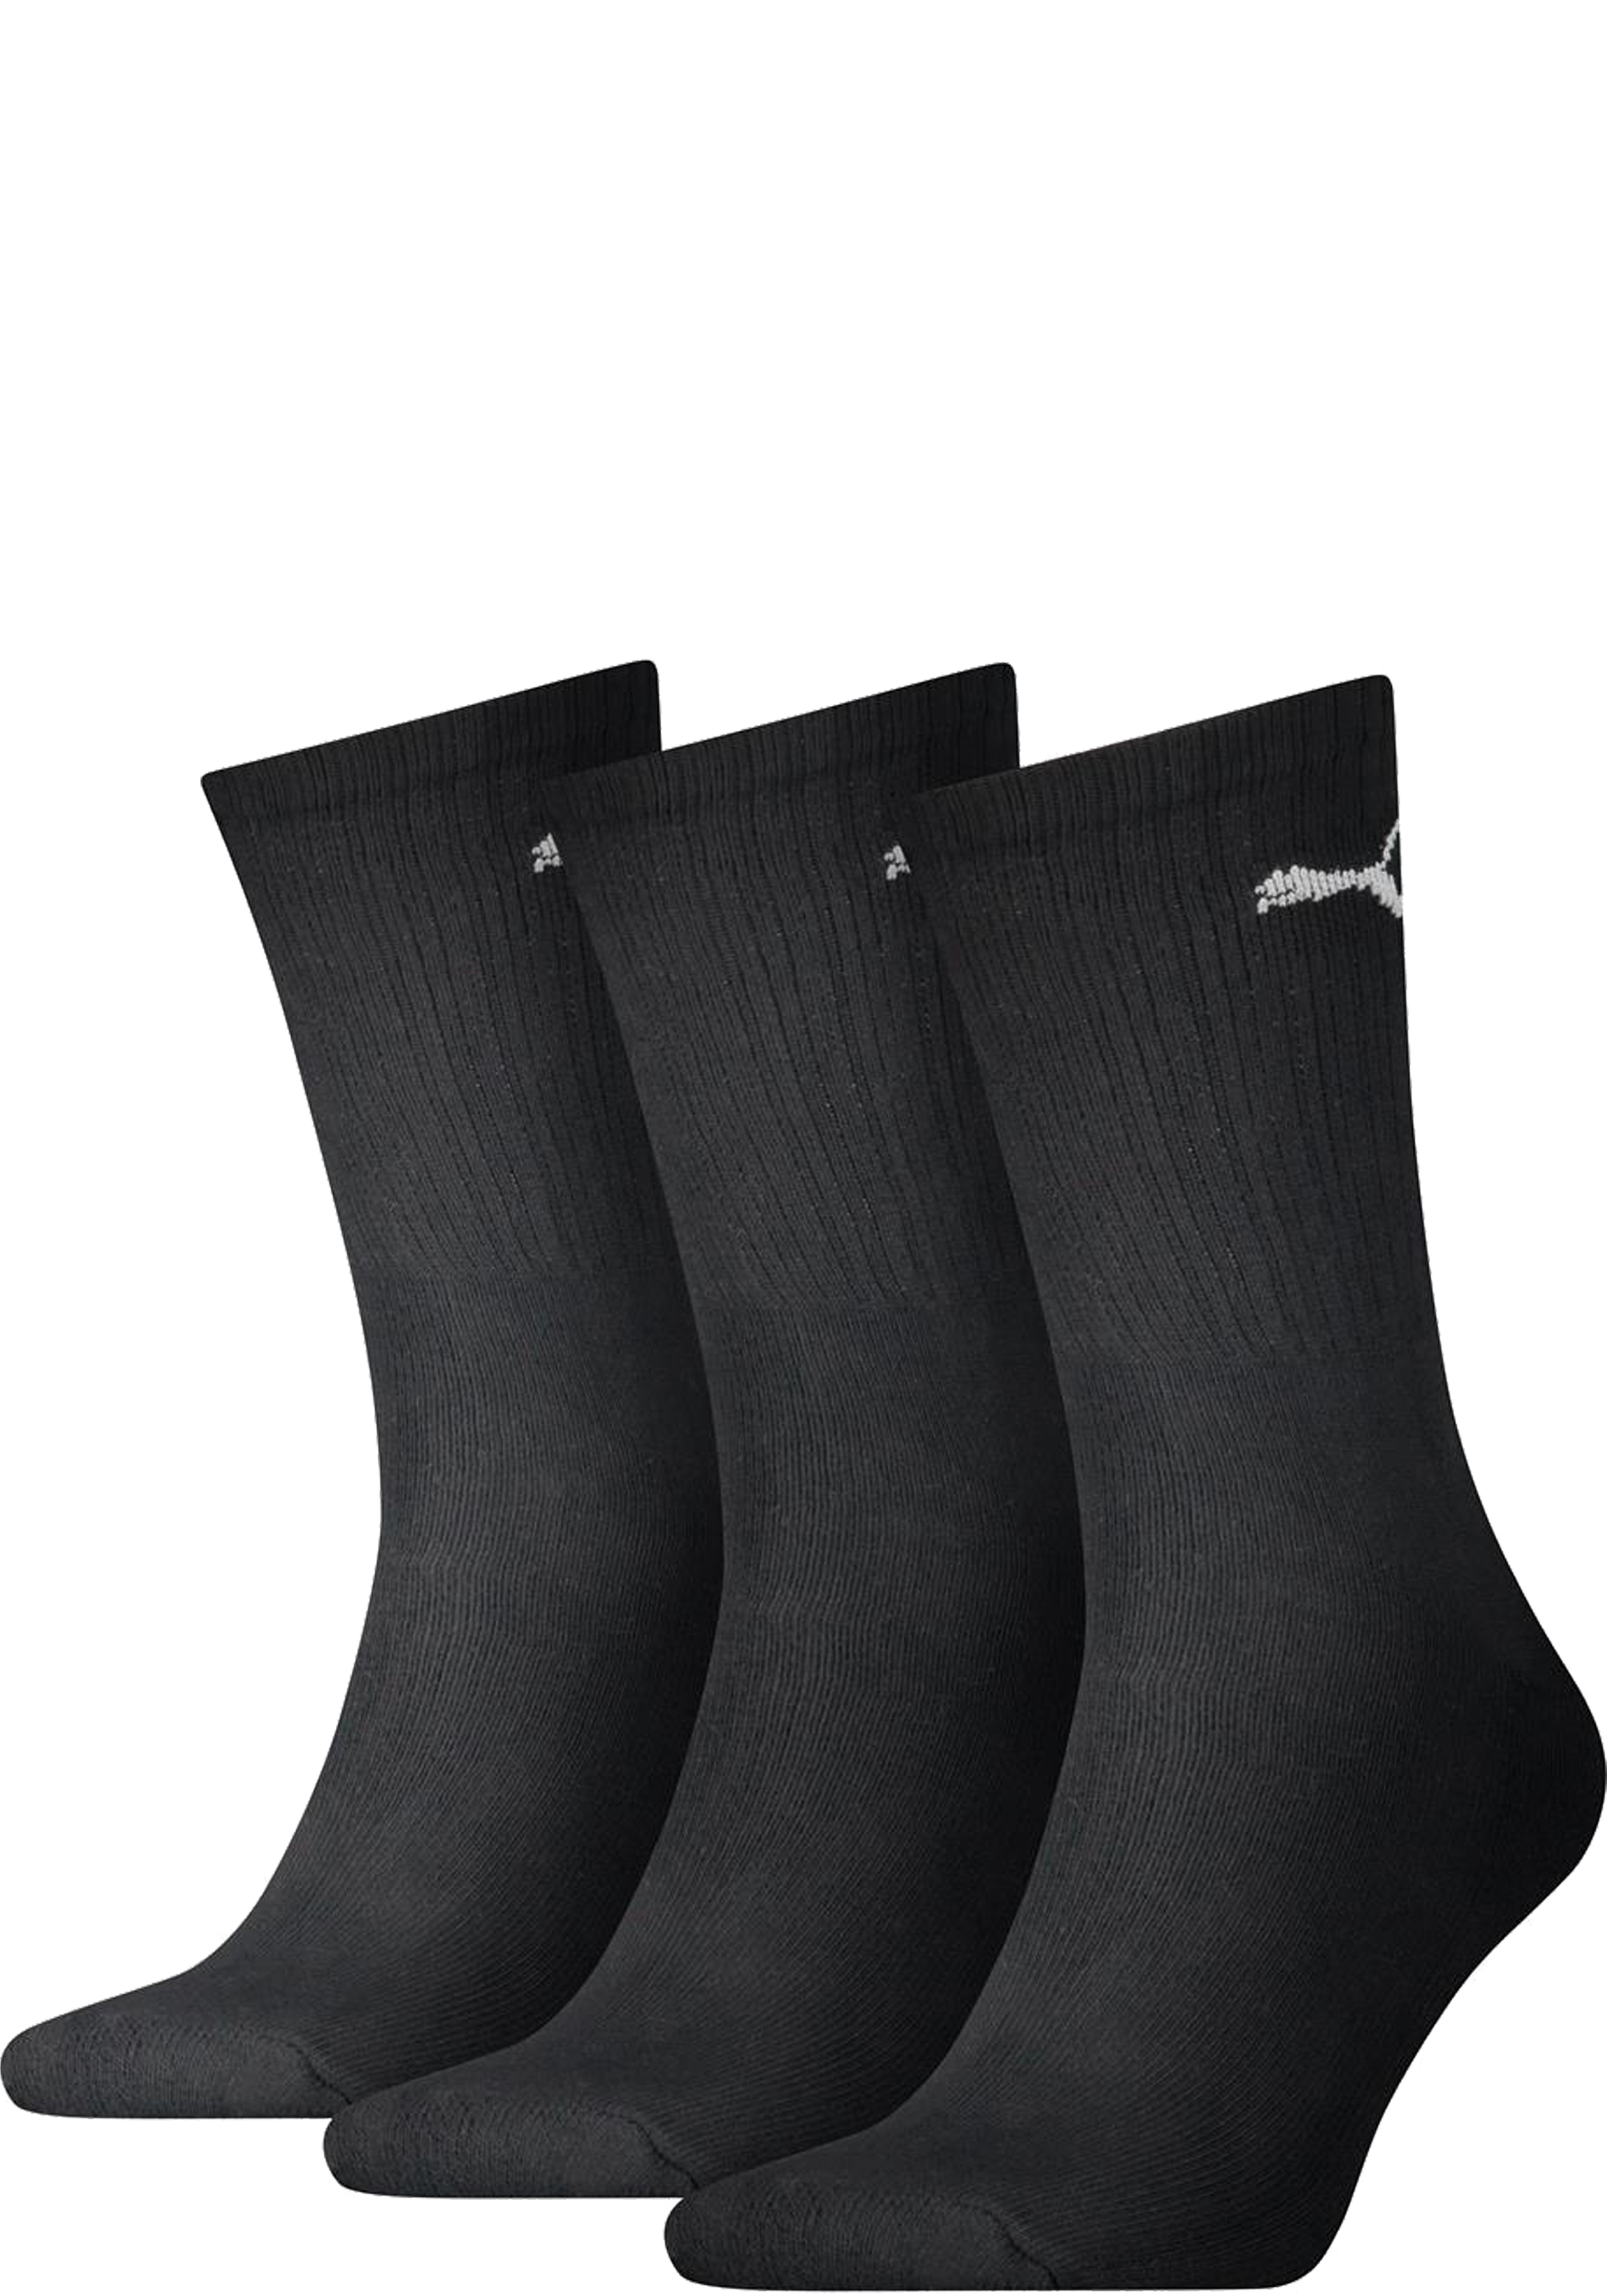 Puma Crew Sock Light (3-pack),  sokken, zwart